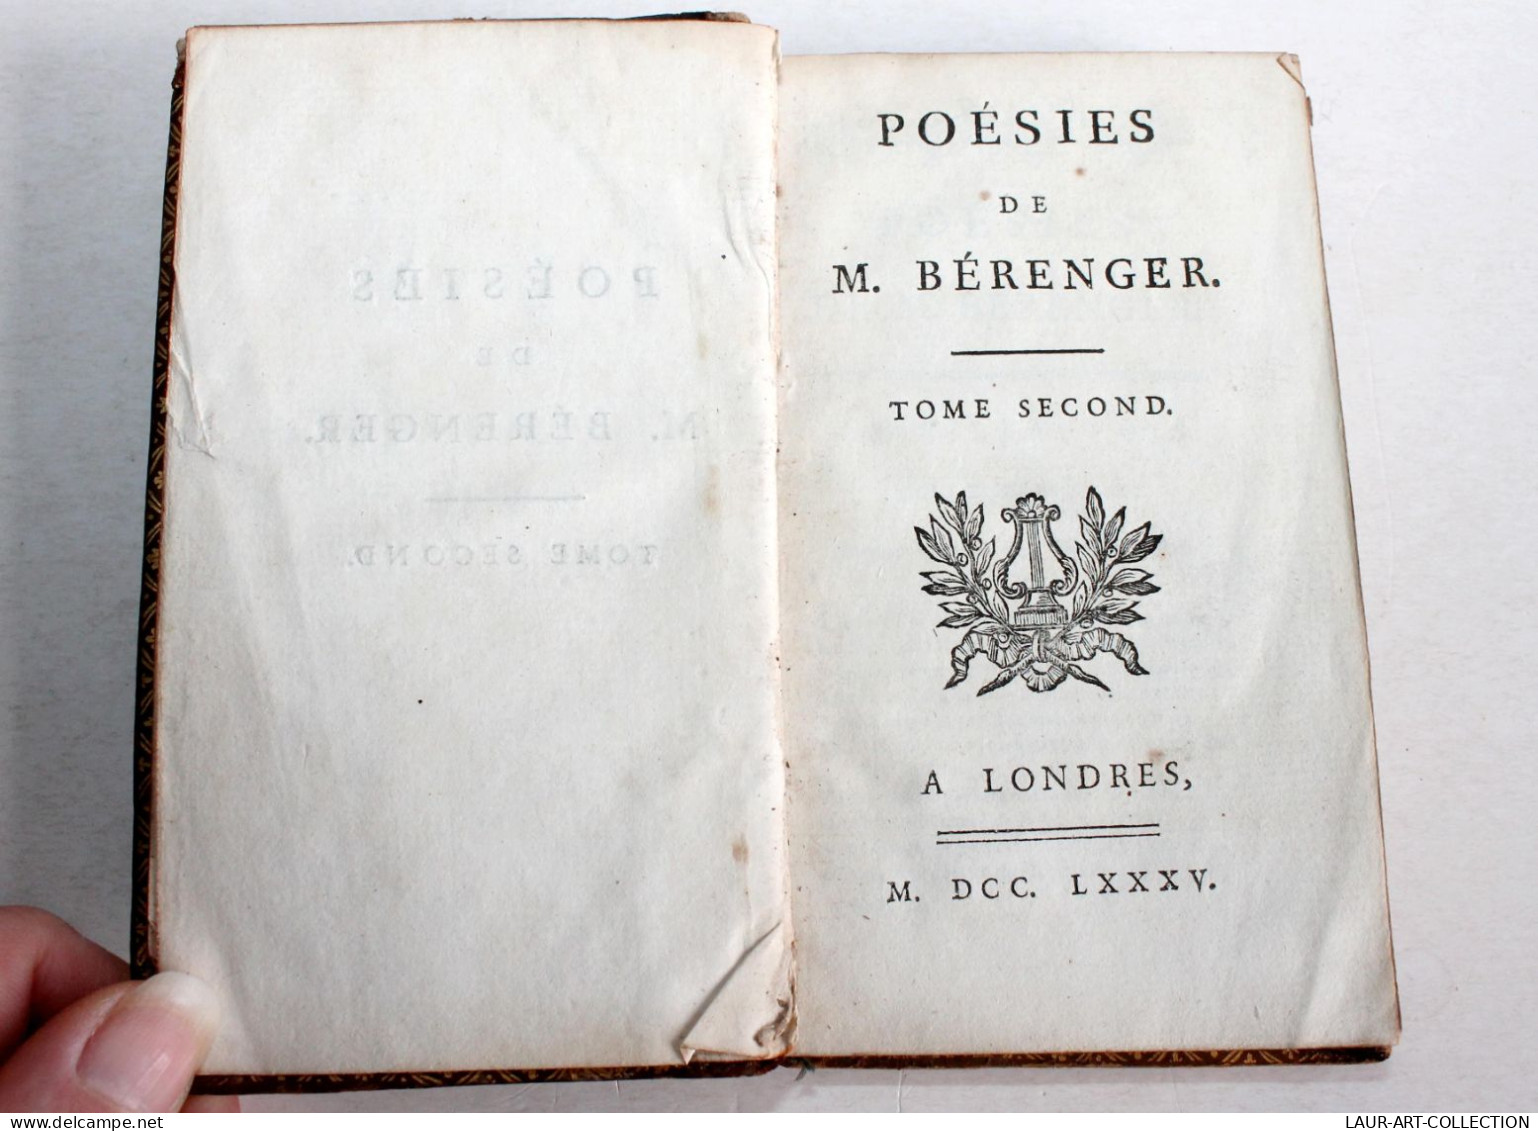 POESIES DE M. BERANGER TOME SECOND 1785 A LONDRES, LIVRE 18e CONTENANT 55 PIECES / ANCIEN LIVRE XVIIIe SIECLE (1803.132) - Auteurs Français